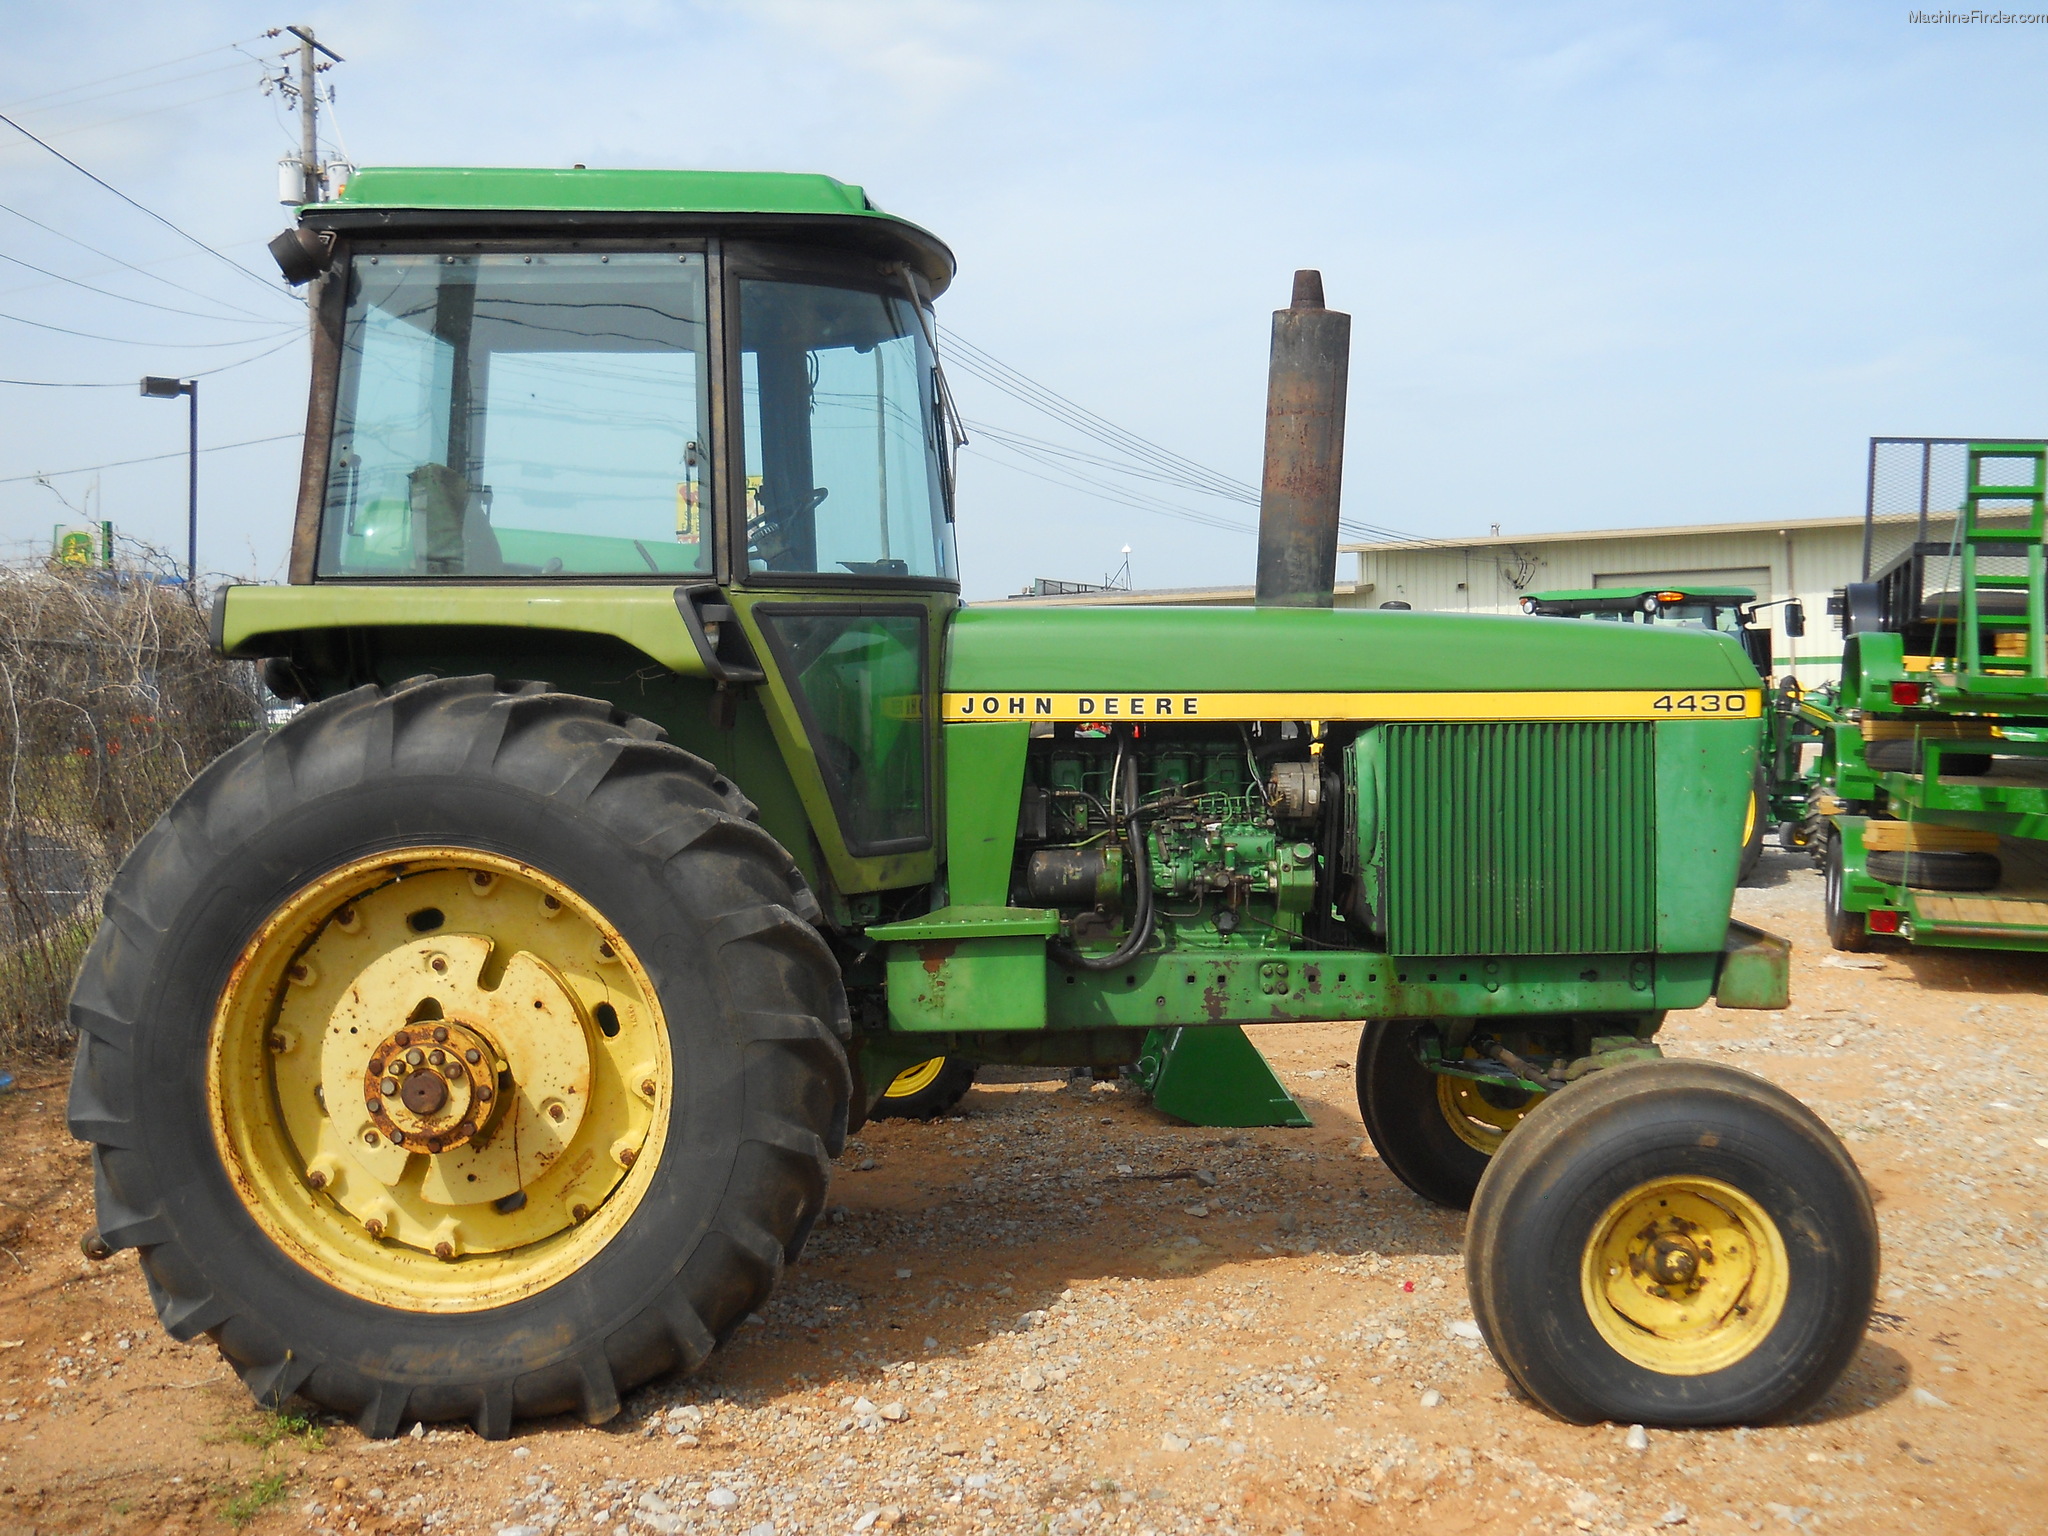 John Deere 4430 Tractors Row Crop 100hp John Deere Machinefinder 7138